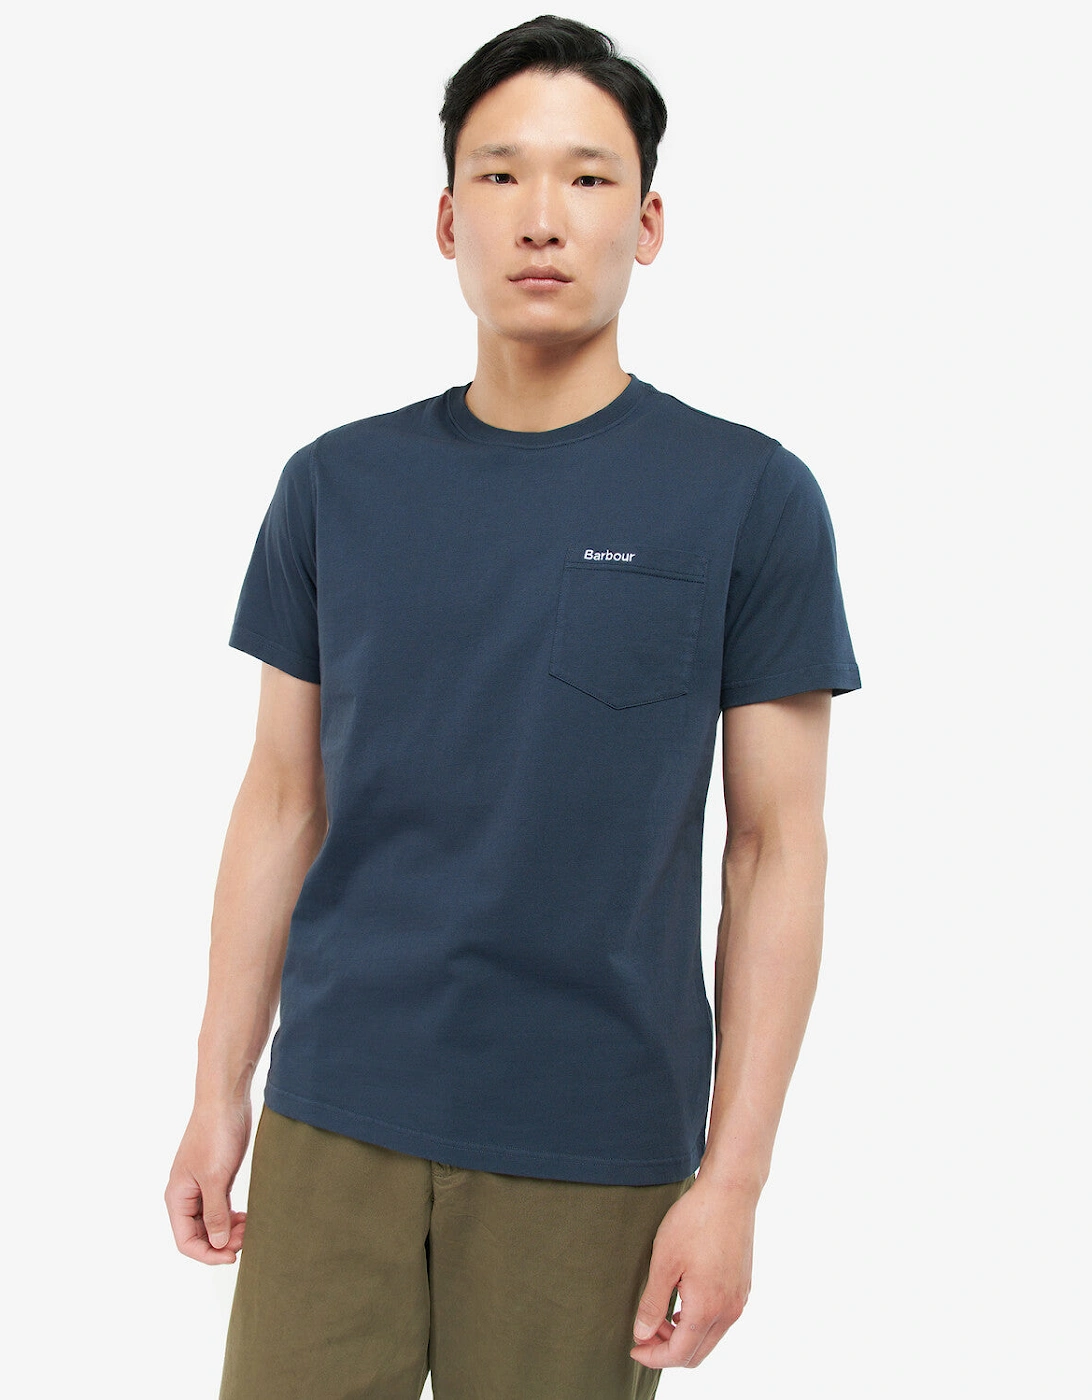 Langdon Pocket T-Shirt NY91 Navy